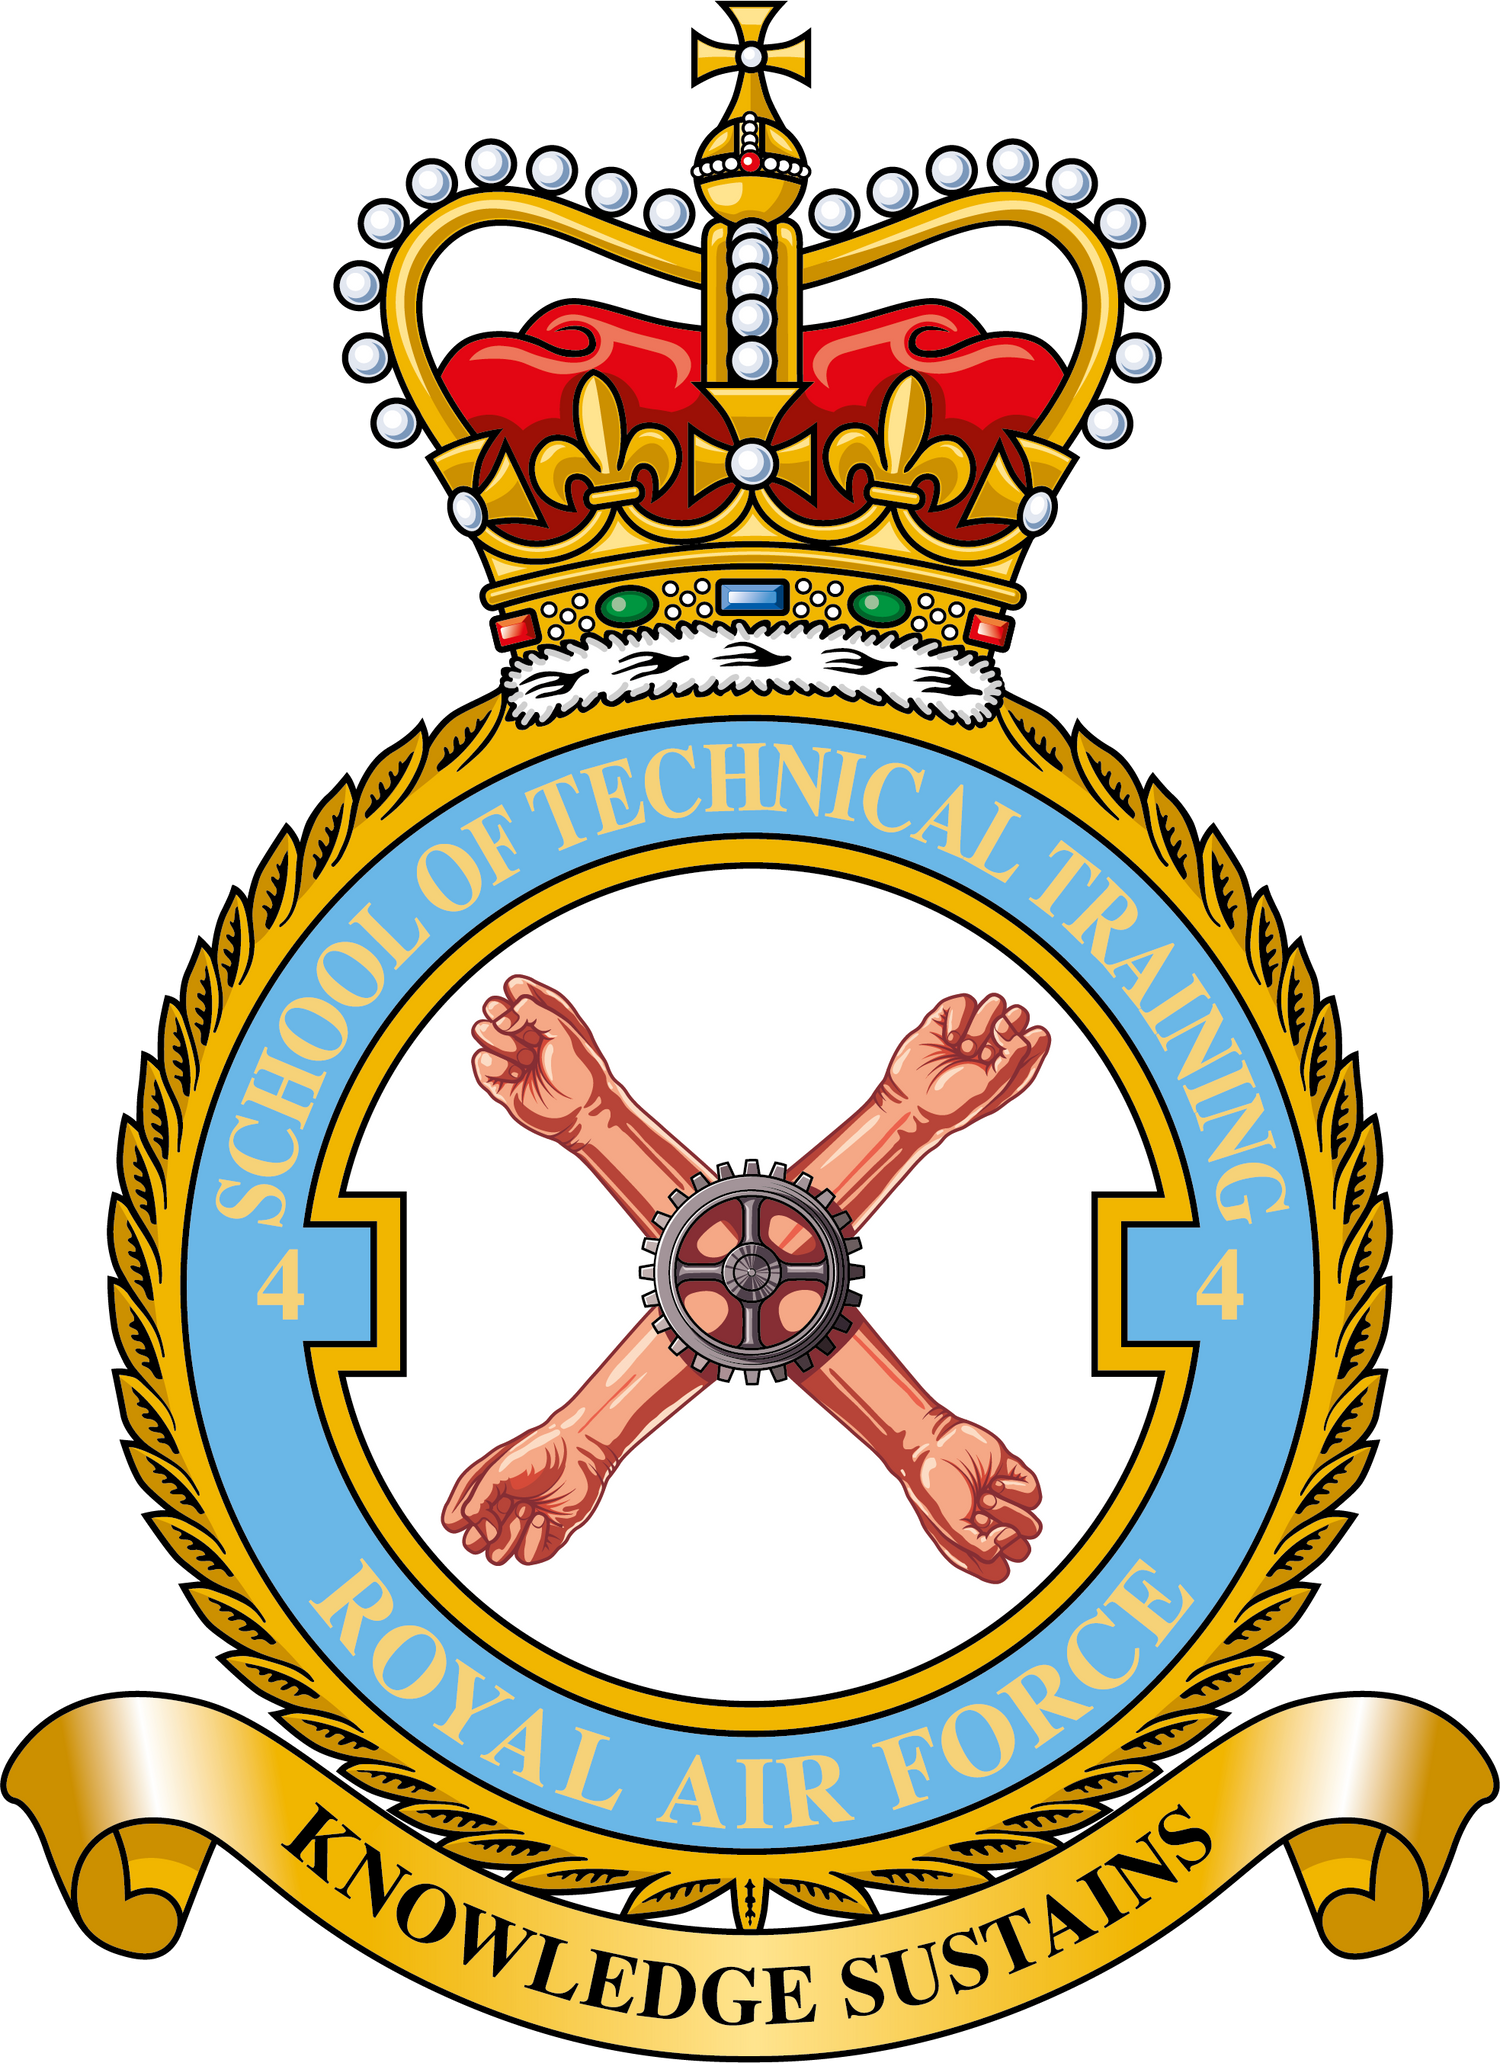 4 School of Technical Training RAF